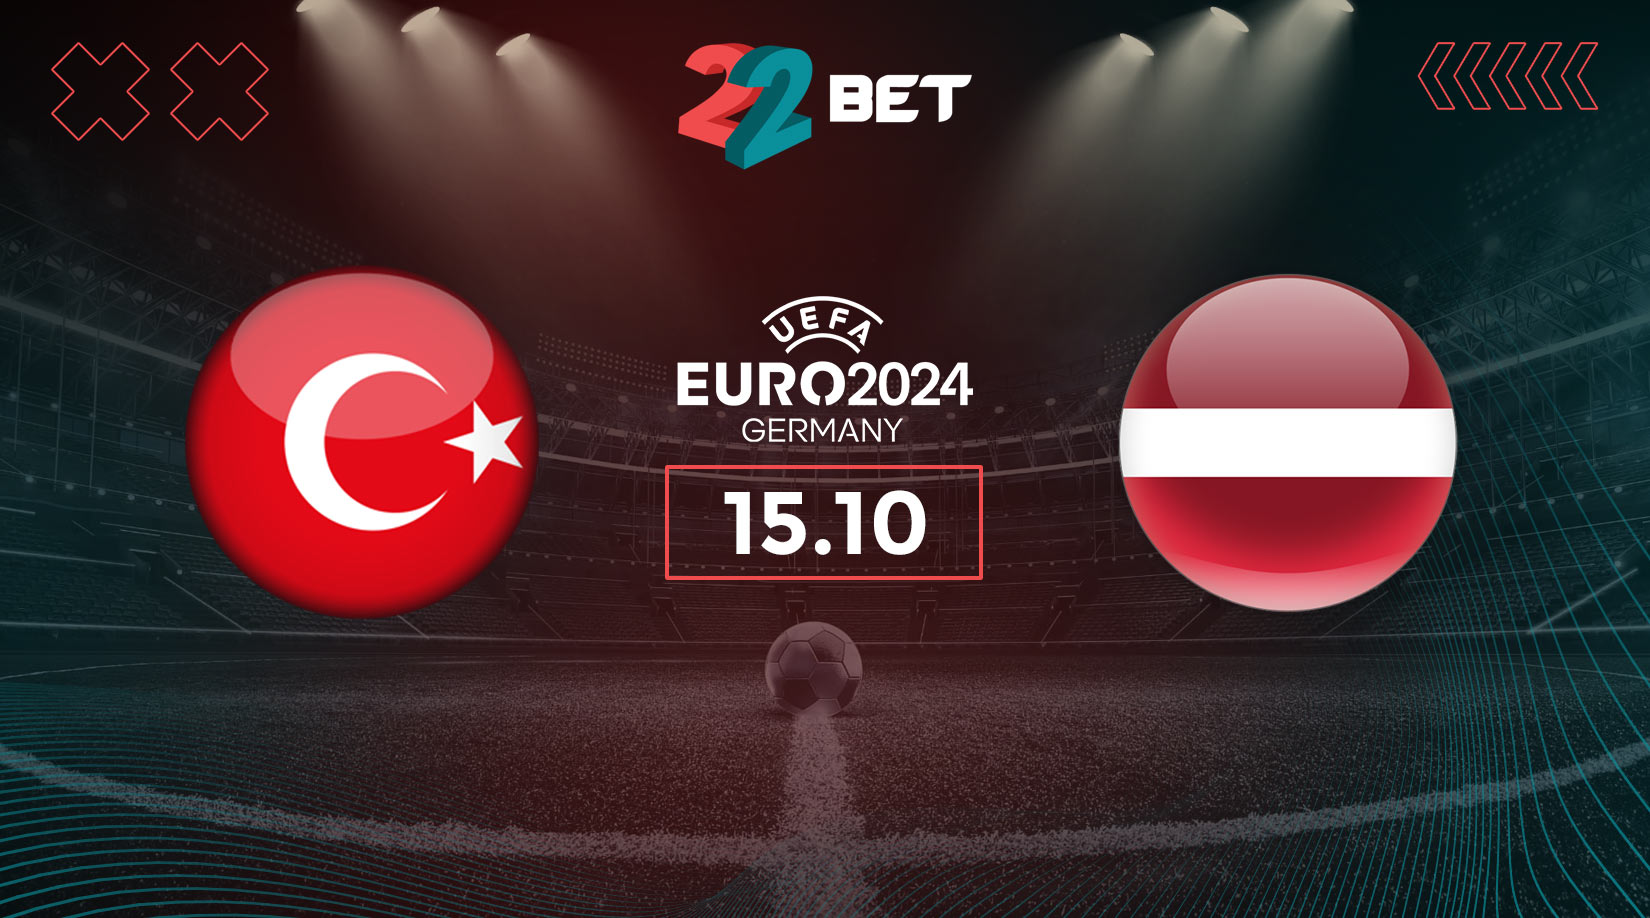 Türkiye vs Latvia Prediction: Euro 2024 Match on 15.10.2023